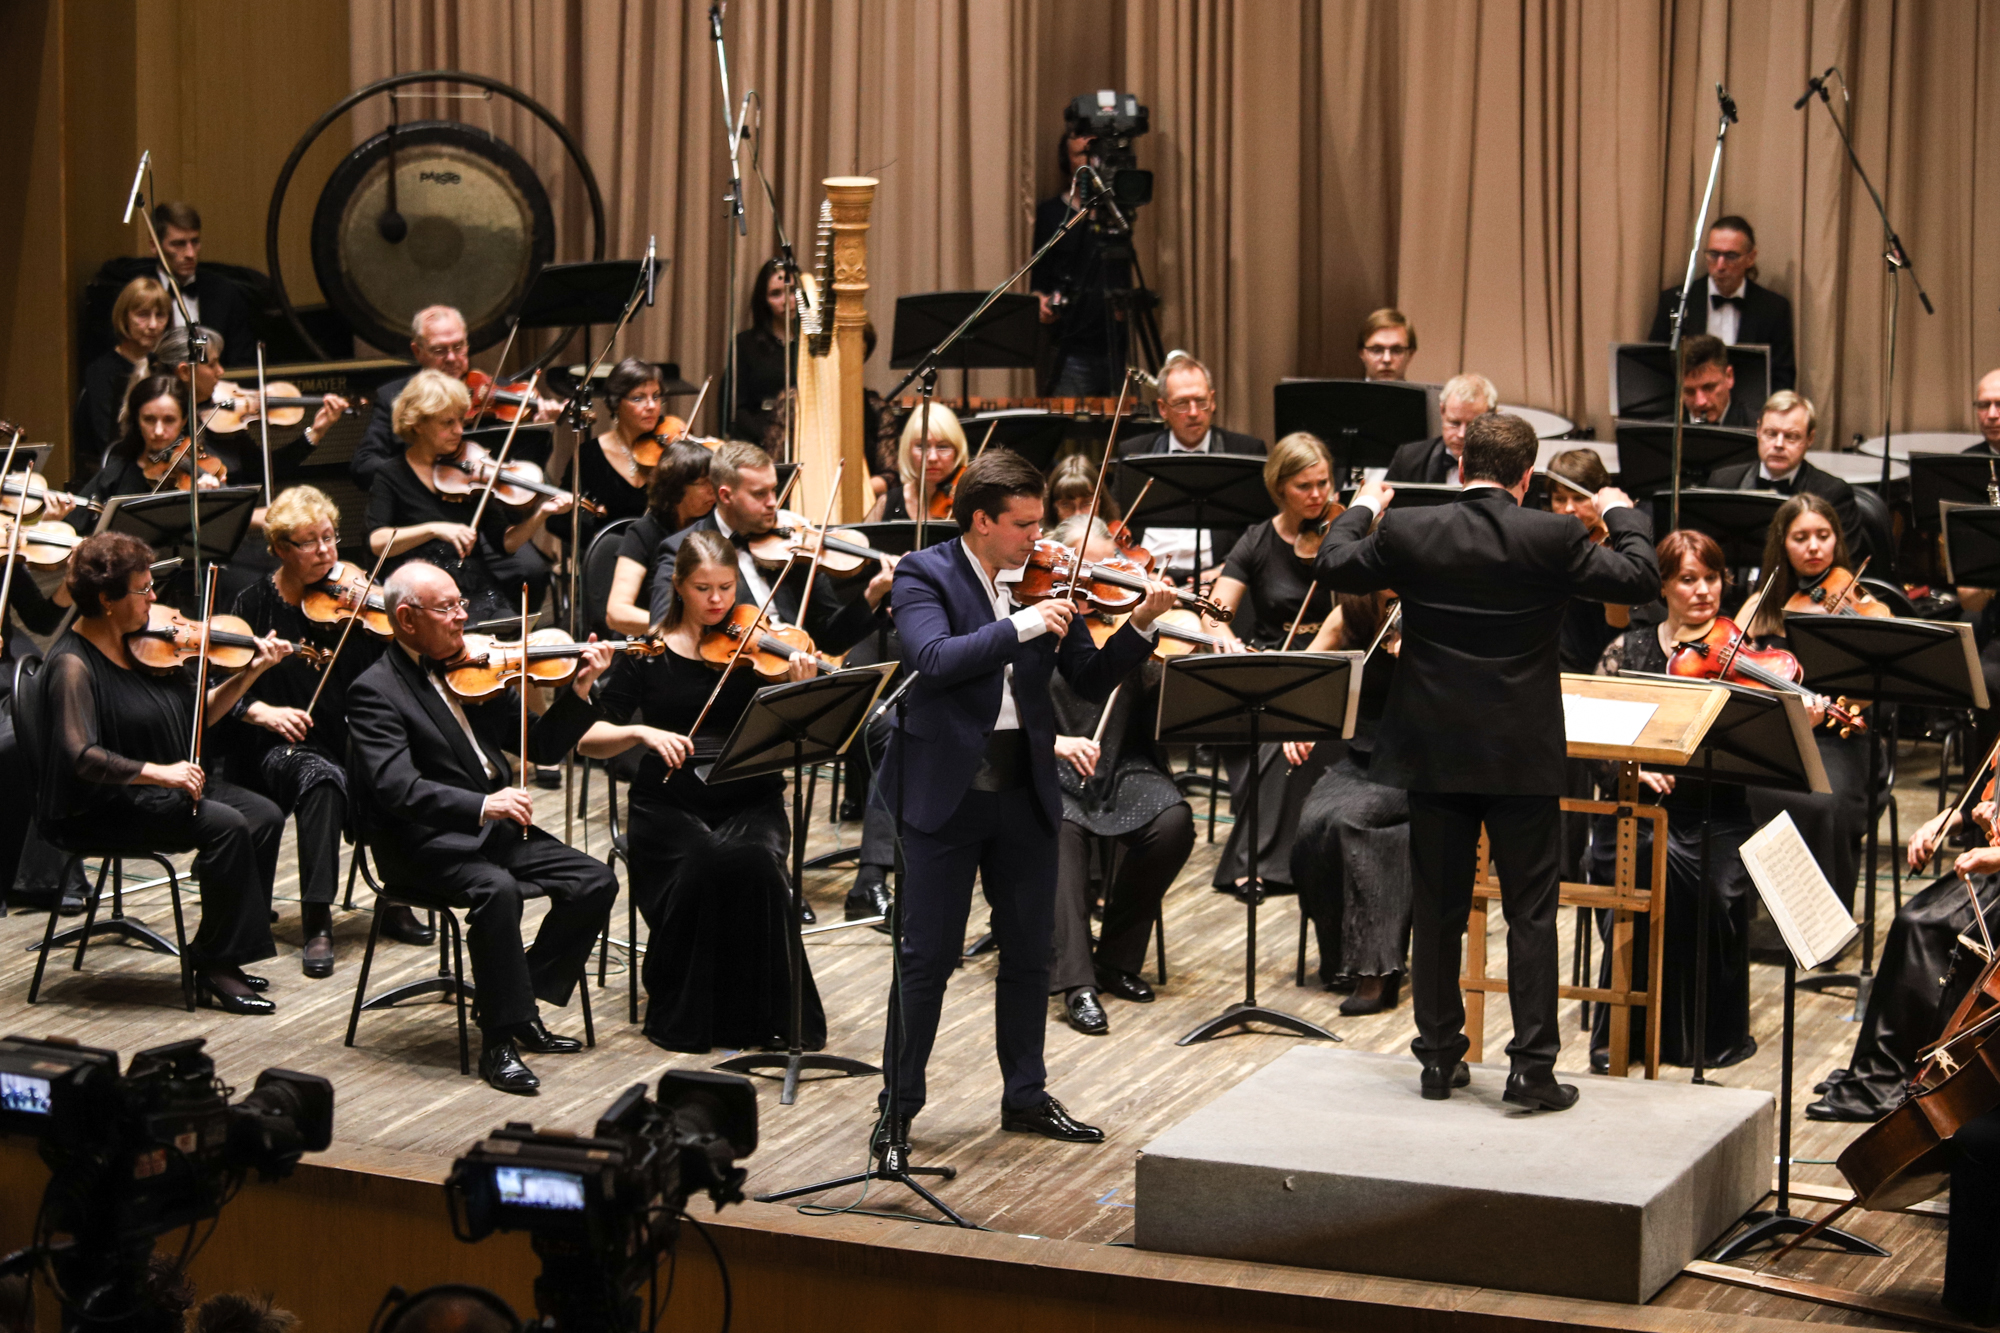 Брамс концерт для скрипки